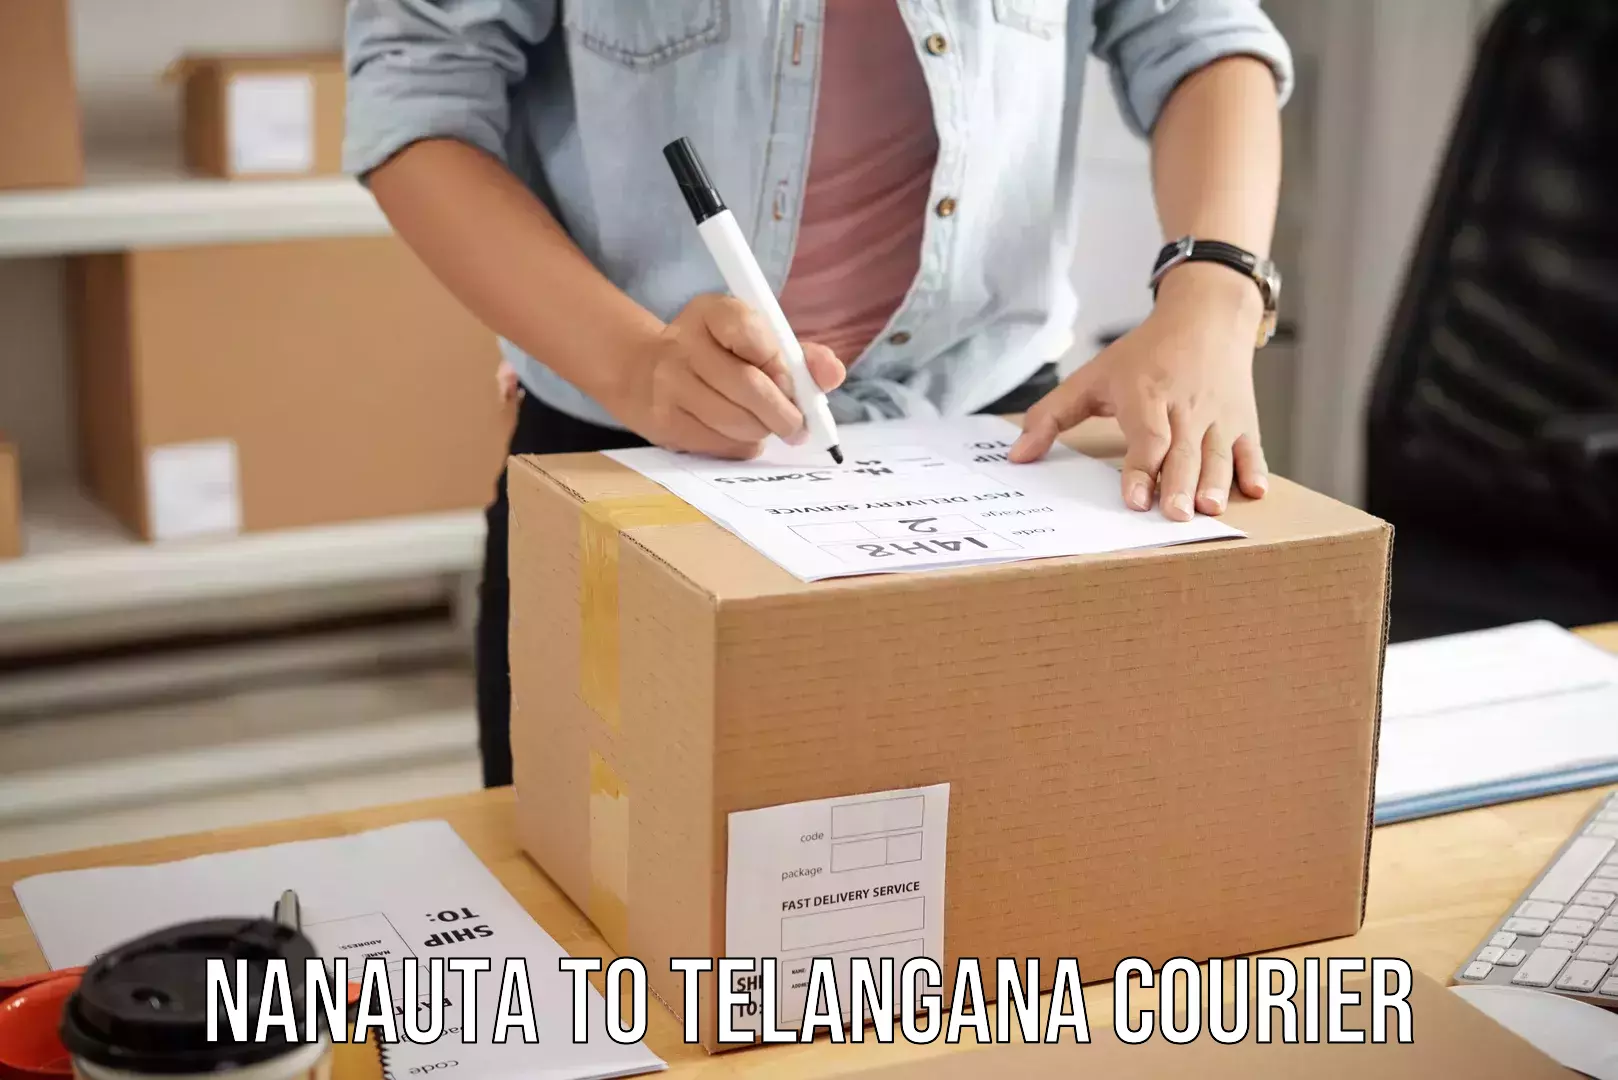 Urgent luggage shipment Nanauta to Kamareddy